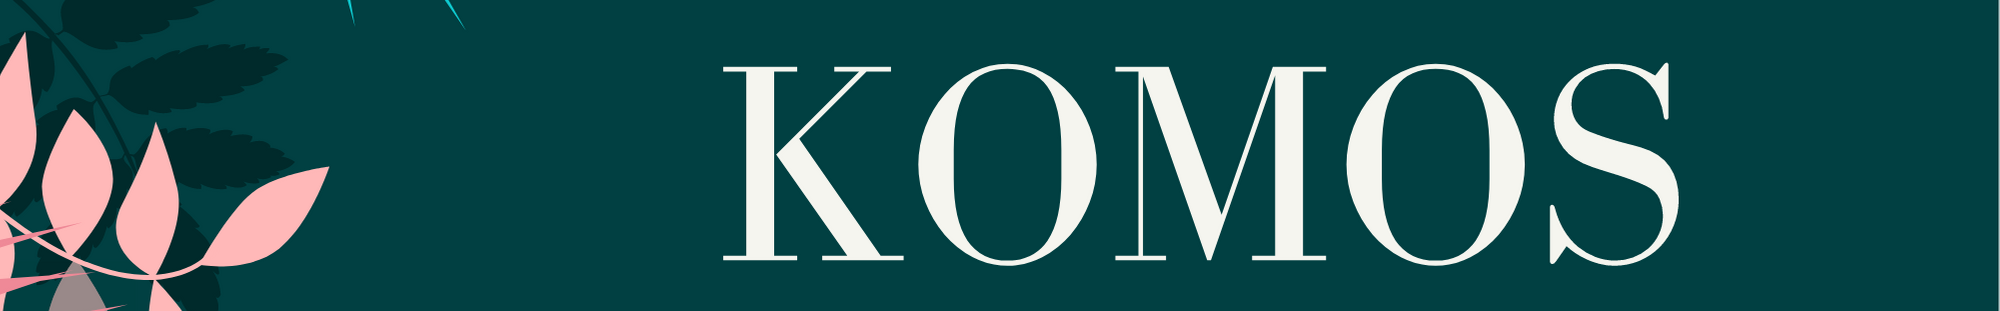 Dola Komos's profile banner